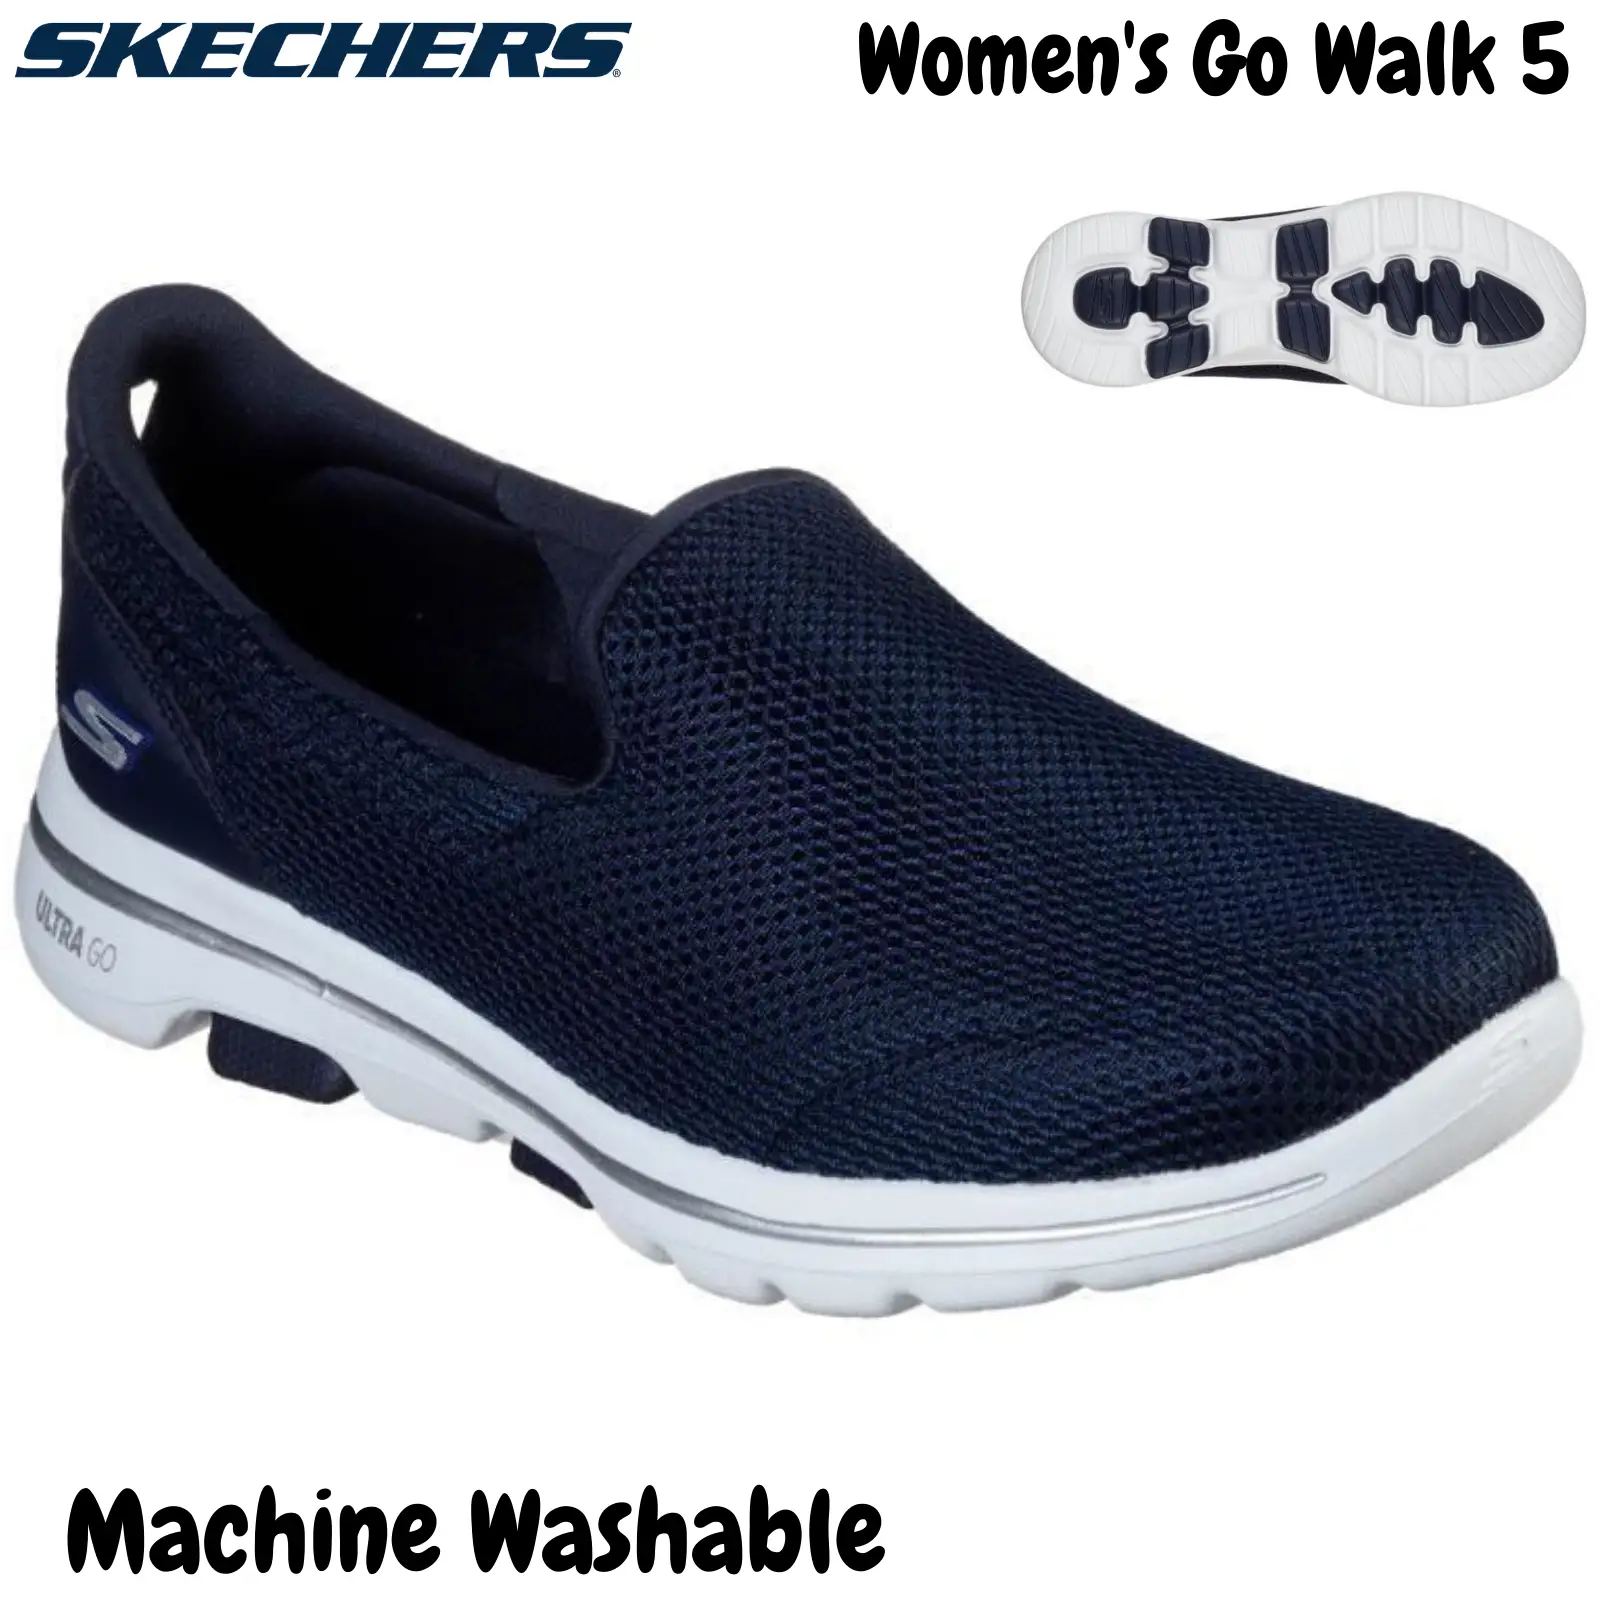 Skechers Women